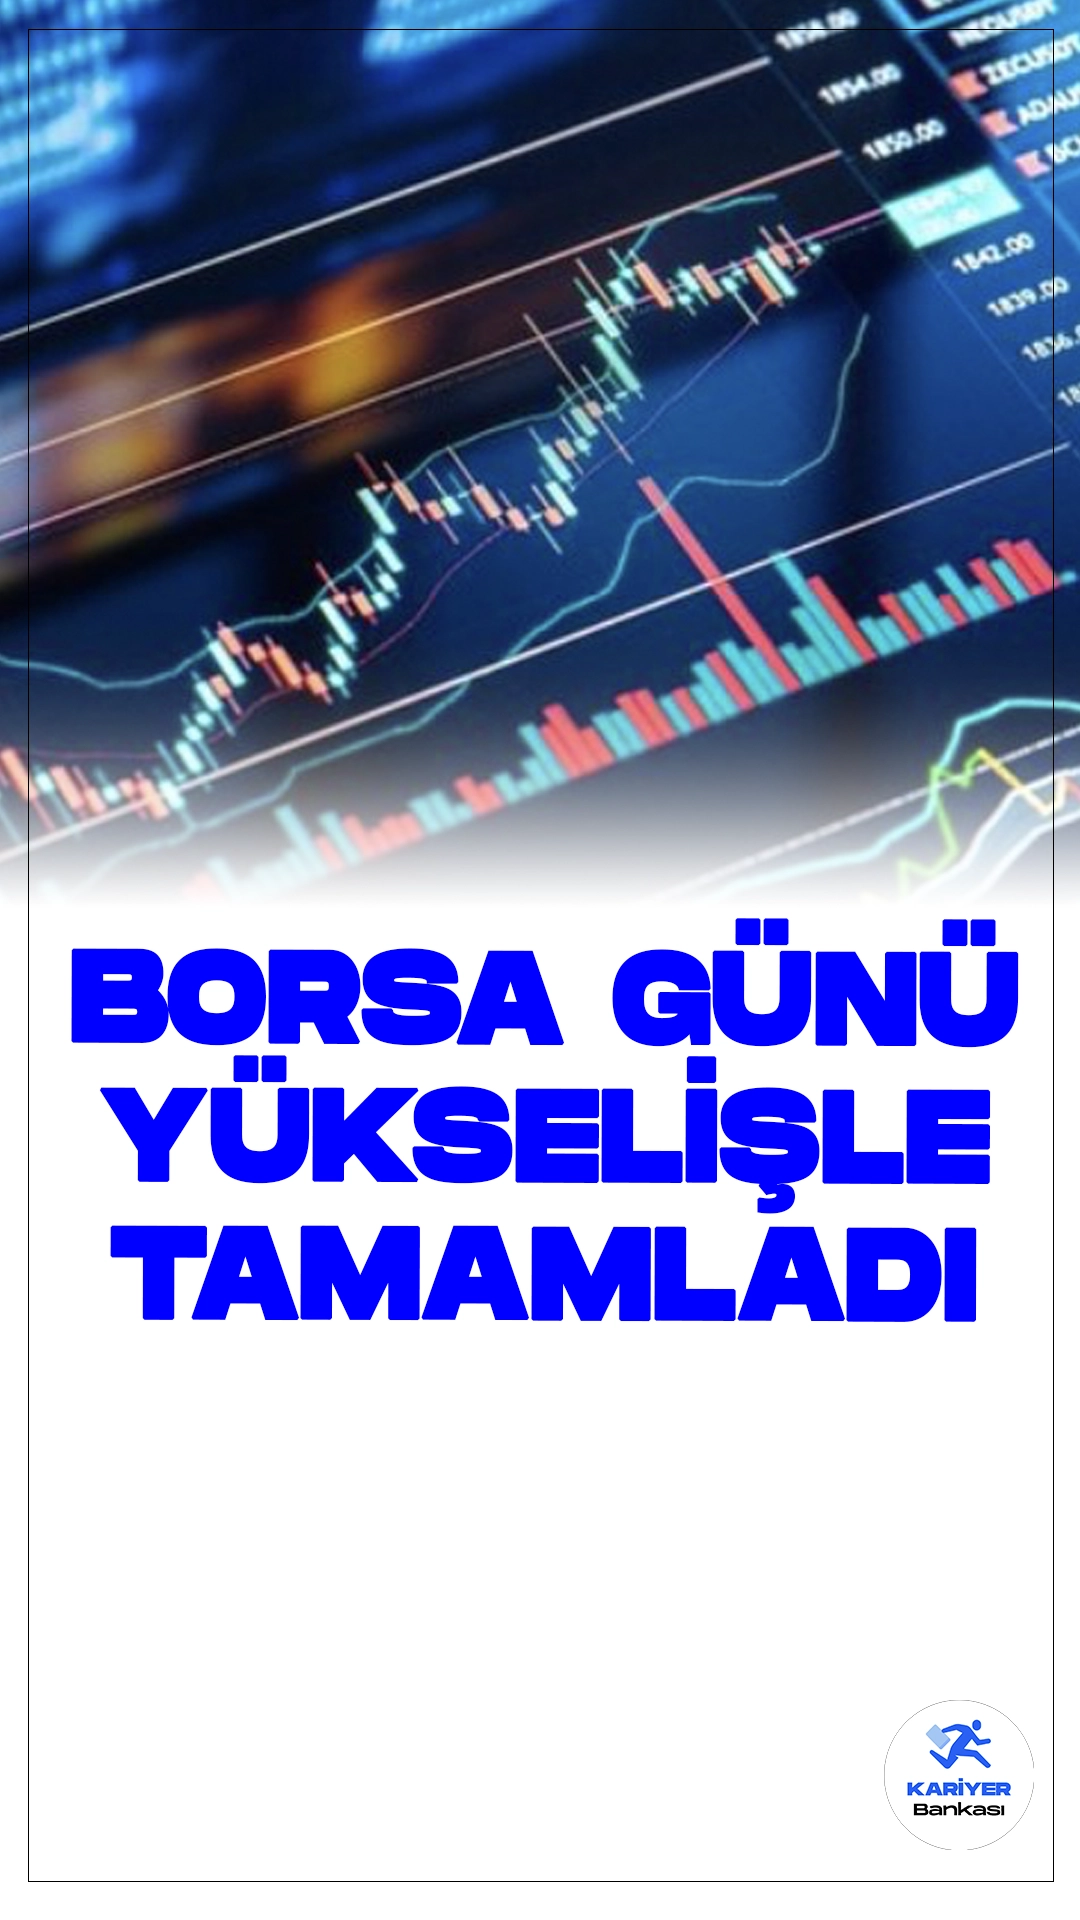 Borsa Günü Yükselişle Tamamladı.Borsa İstanbul'da BIST 100 endeksi, günü yüzde 1,50 değer kazancıyla 10.556,80 puandan tamamladı. BIST 100 endeksi, önceki kapanışa göre 156,32 puan arttı ve toplam işlem hacmi 115,1 milyar lira oldu.